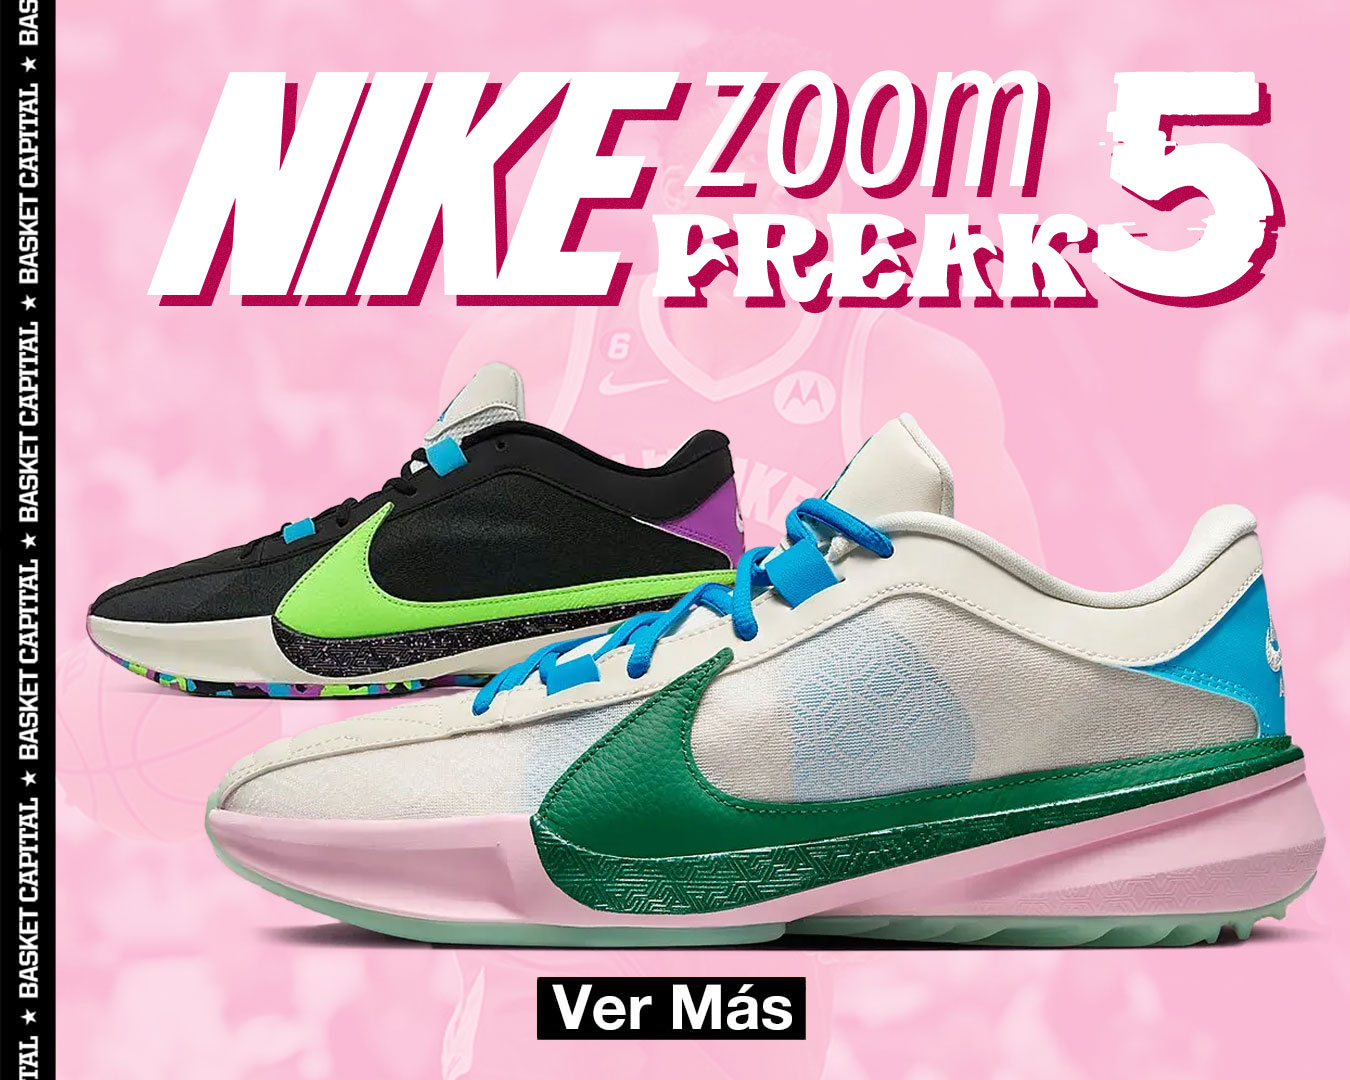 ¡Consegui las nuevas Nike Zoom Freak 5!